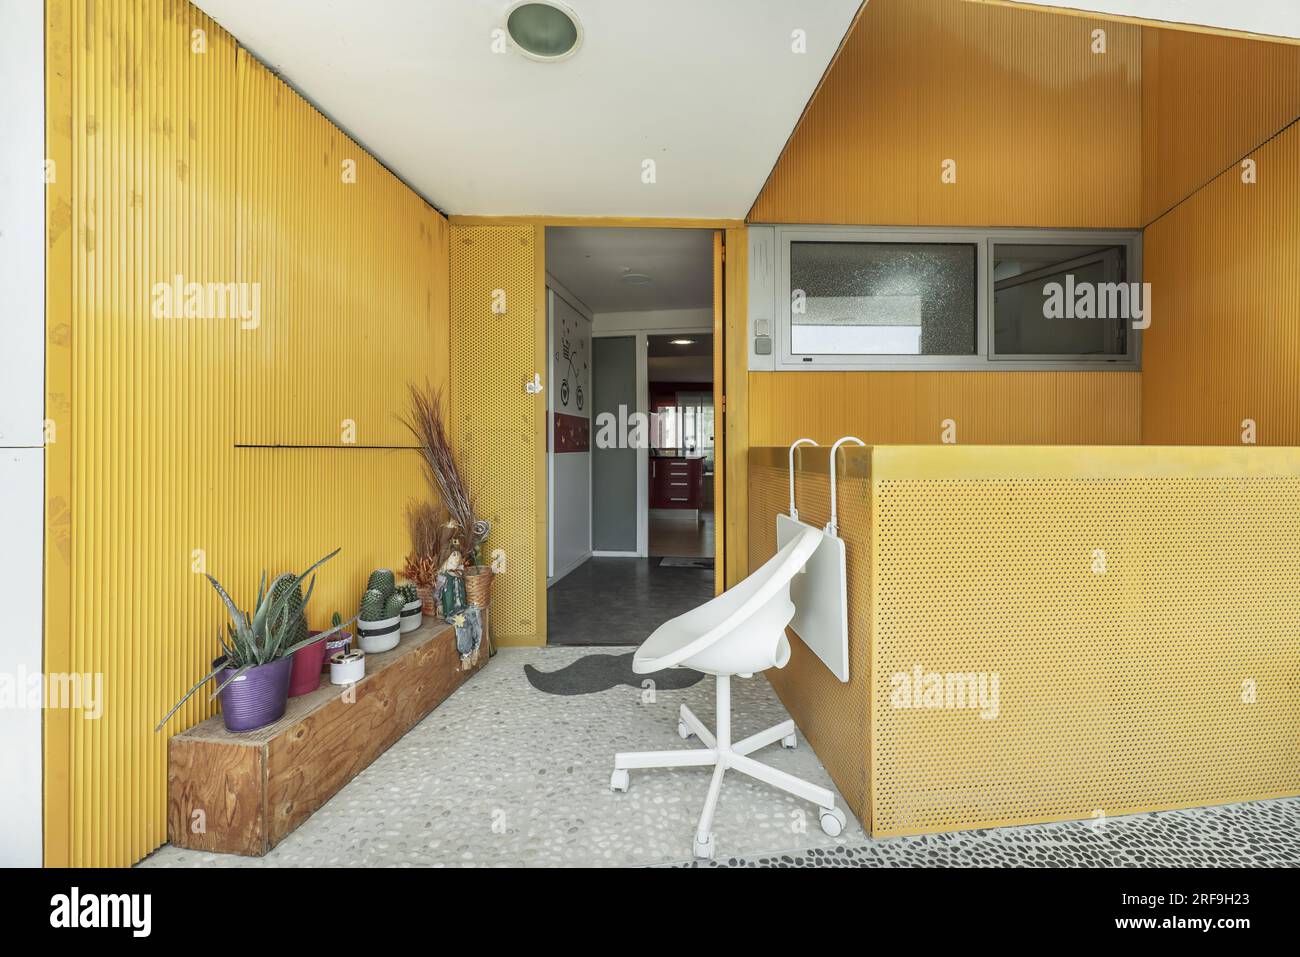 Porche d'entrée d'une maison avec une corde à linge, un banc en bois pour placer les plantes et les murs peints en jaune Banque D'Images